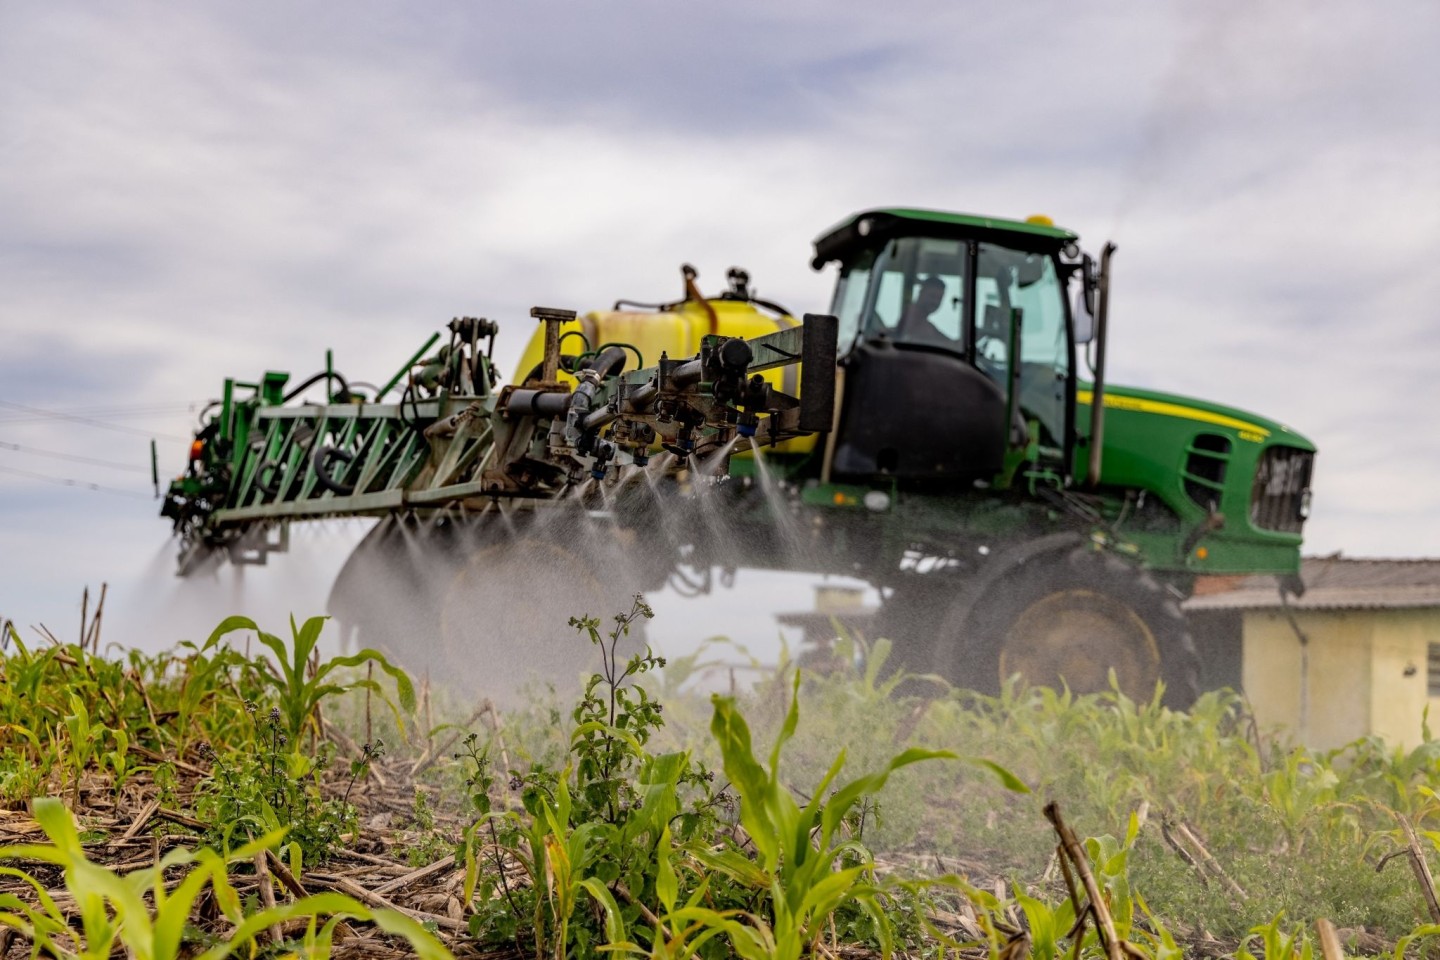 Düngemittel-Einsatz in der Landwirtschaft. Die weltweiten Ammoniak-Emmissionen gehen fast ausschließlich auf den Agrarsektor zurück.